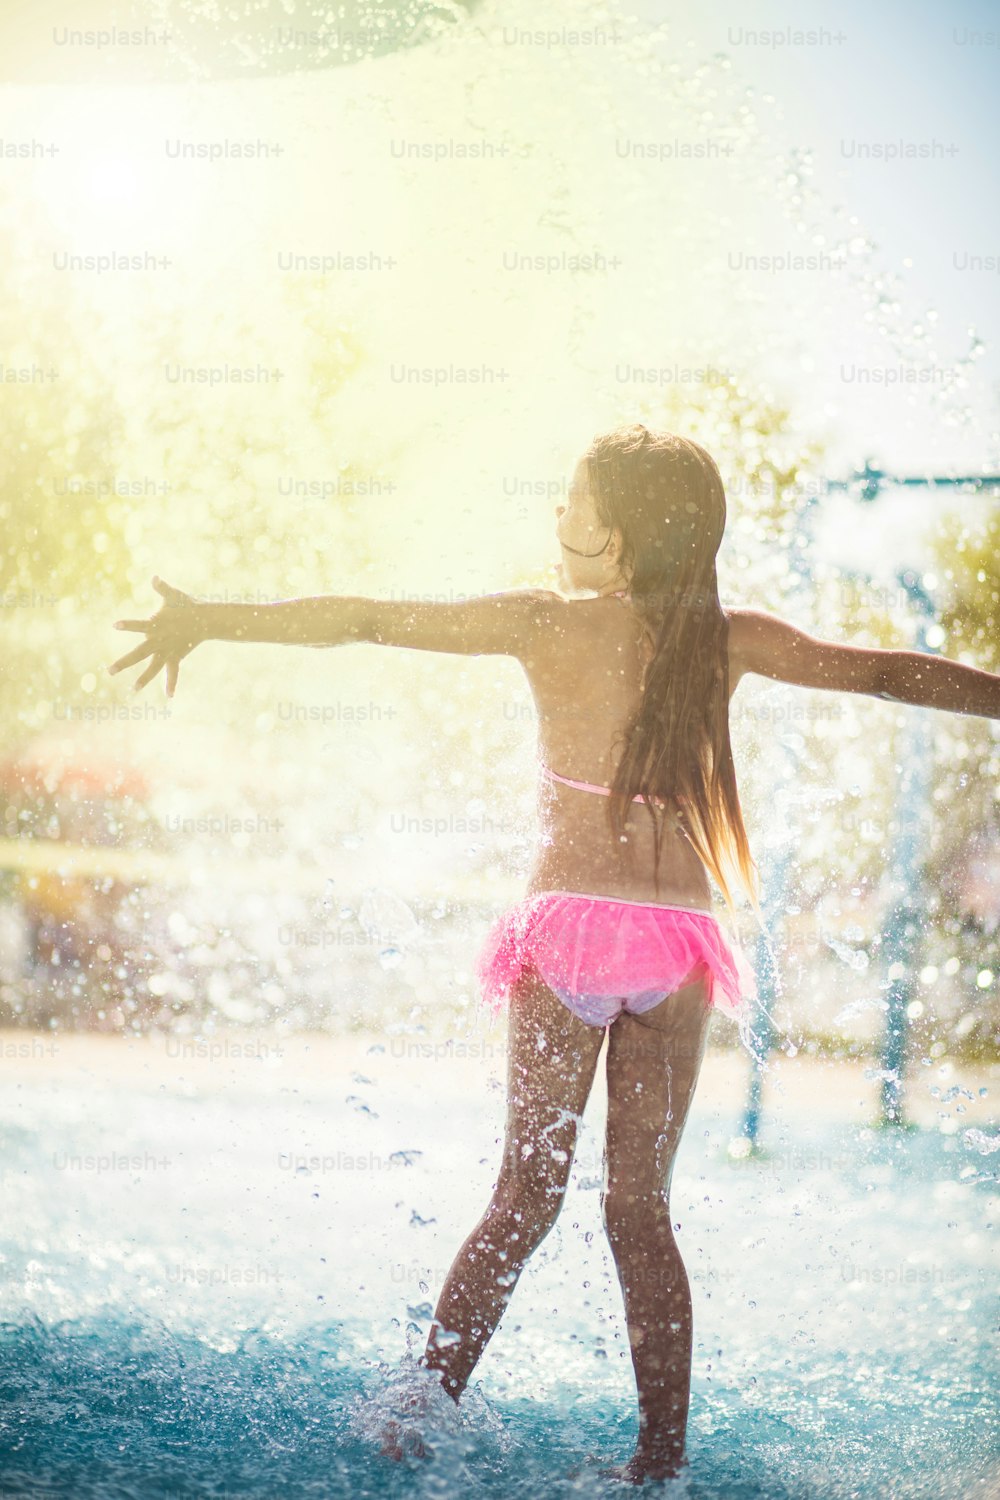 자유는 너무 좋습니다. 수영장에서 즐거운 시간을 보내는 아이.